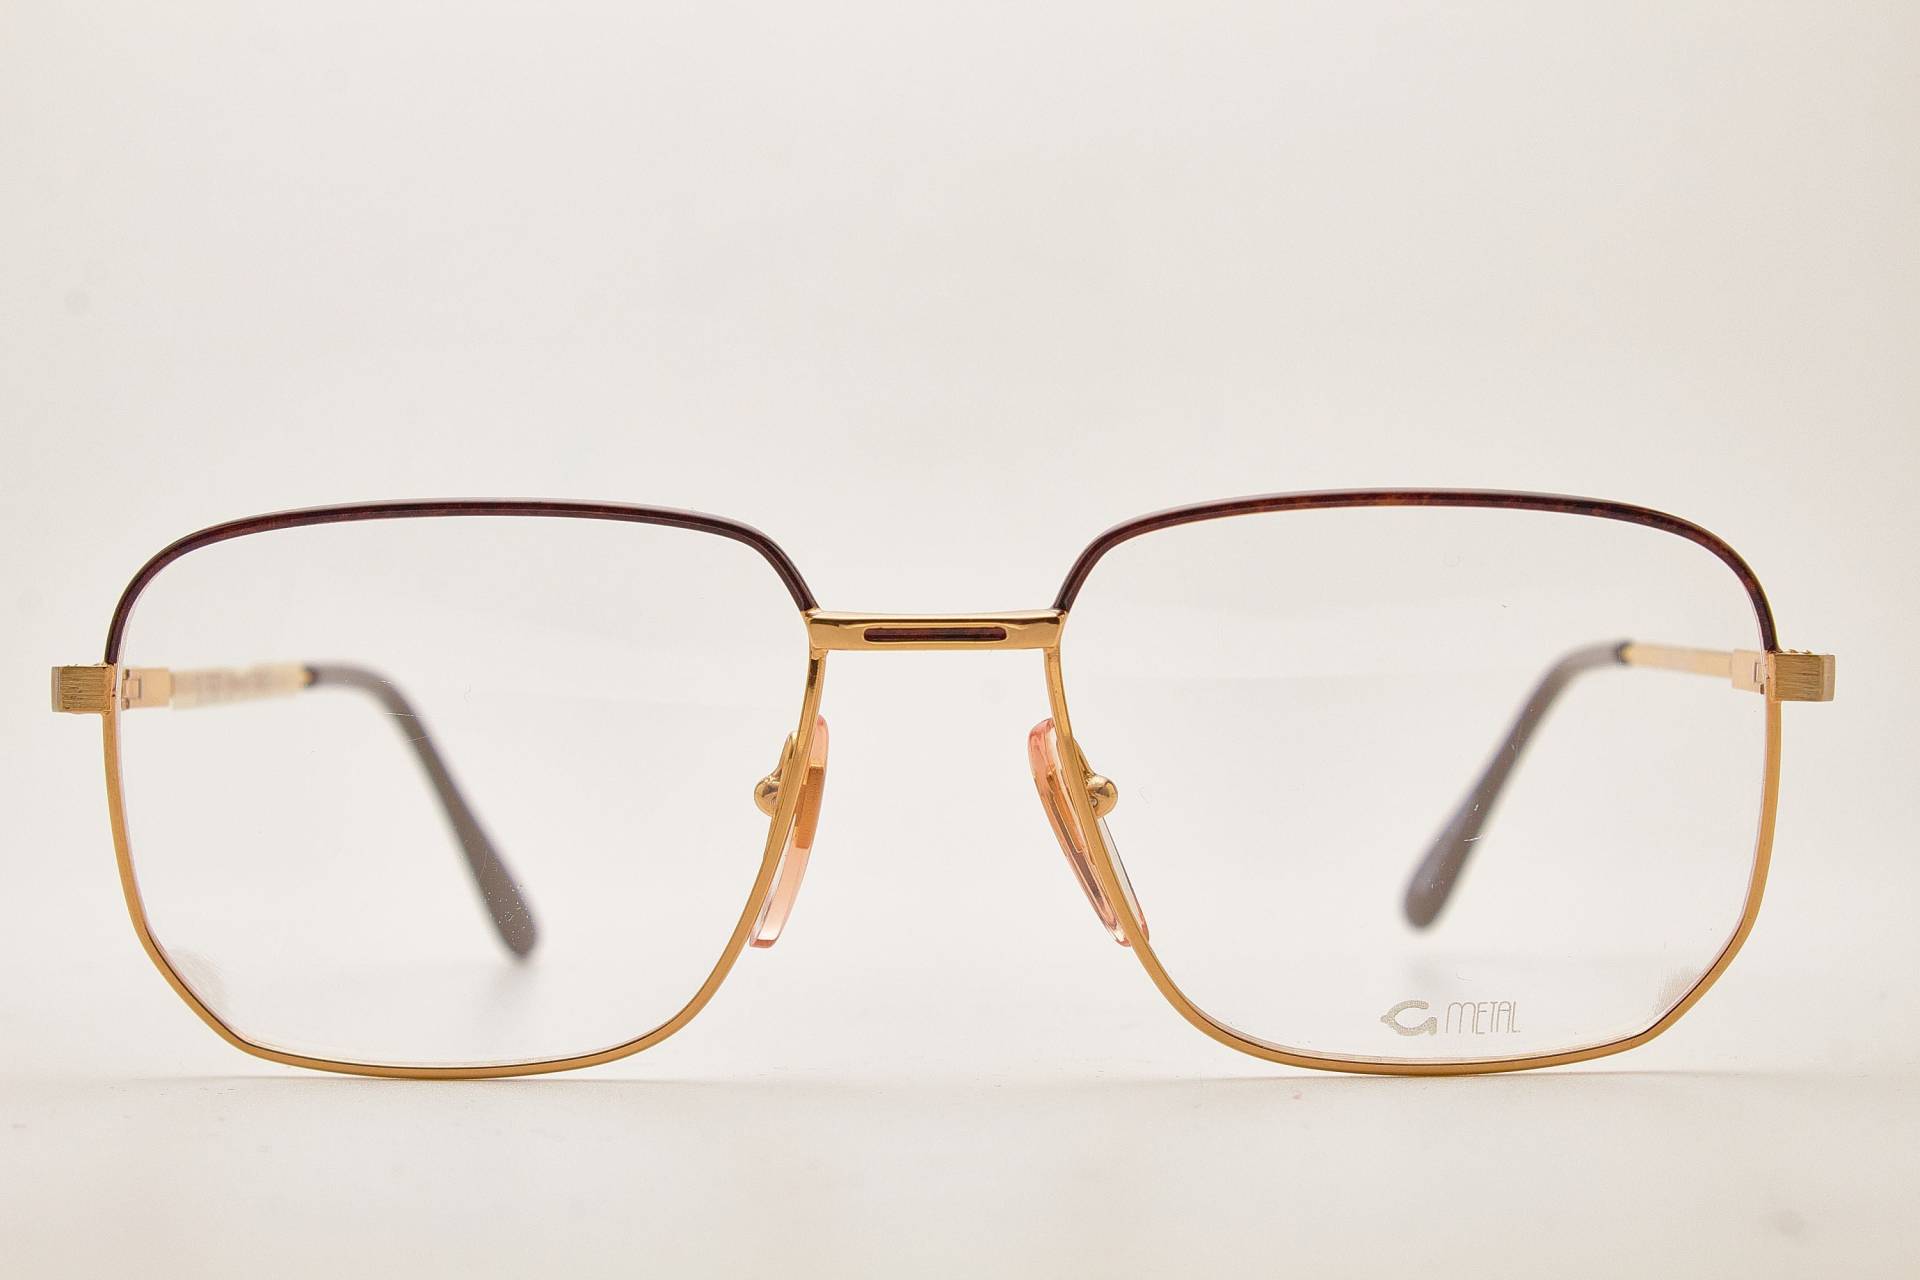 Grasset Vintage Brille G-Metal Gold Rahmen, Vintage Brillen 1980Er Jahre, Aviator Brille, Oversize Sonnenbrille, Pilotenbrille, 80Er Sonnenbrille von VintageGlassesVault